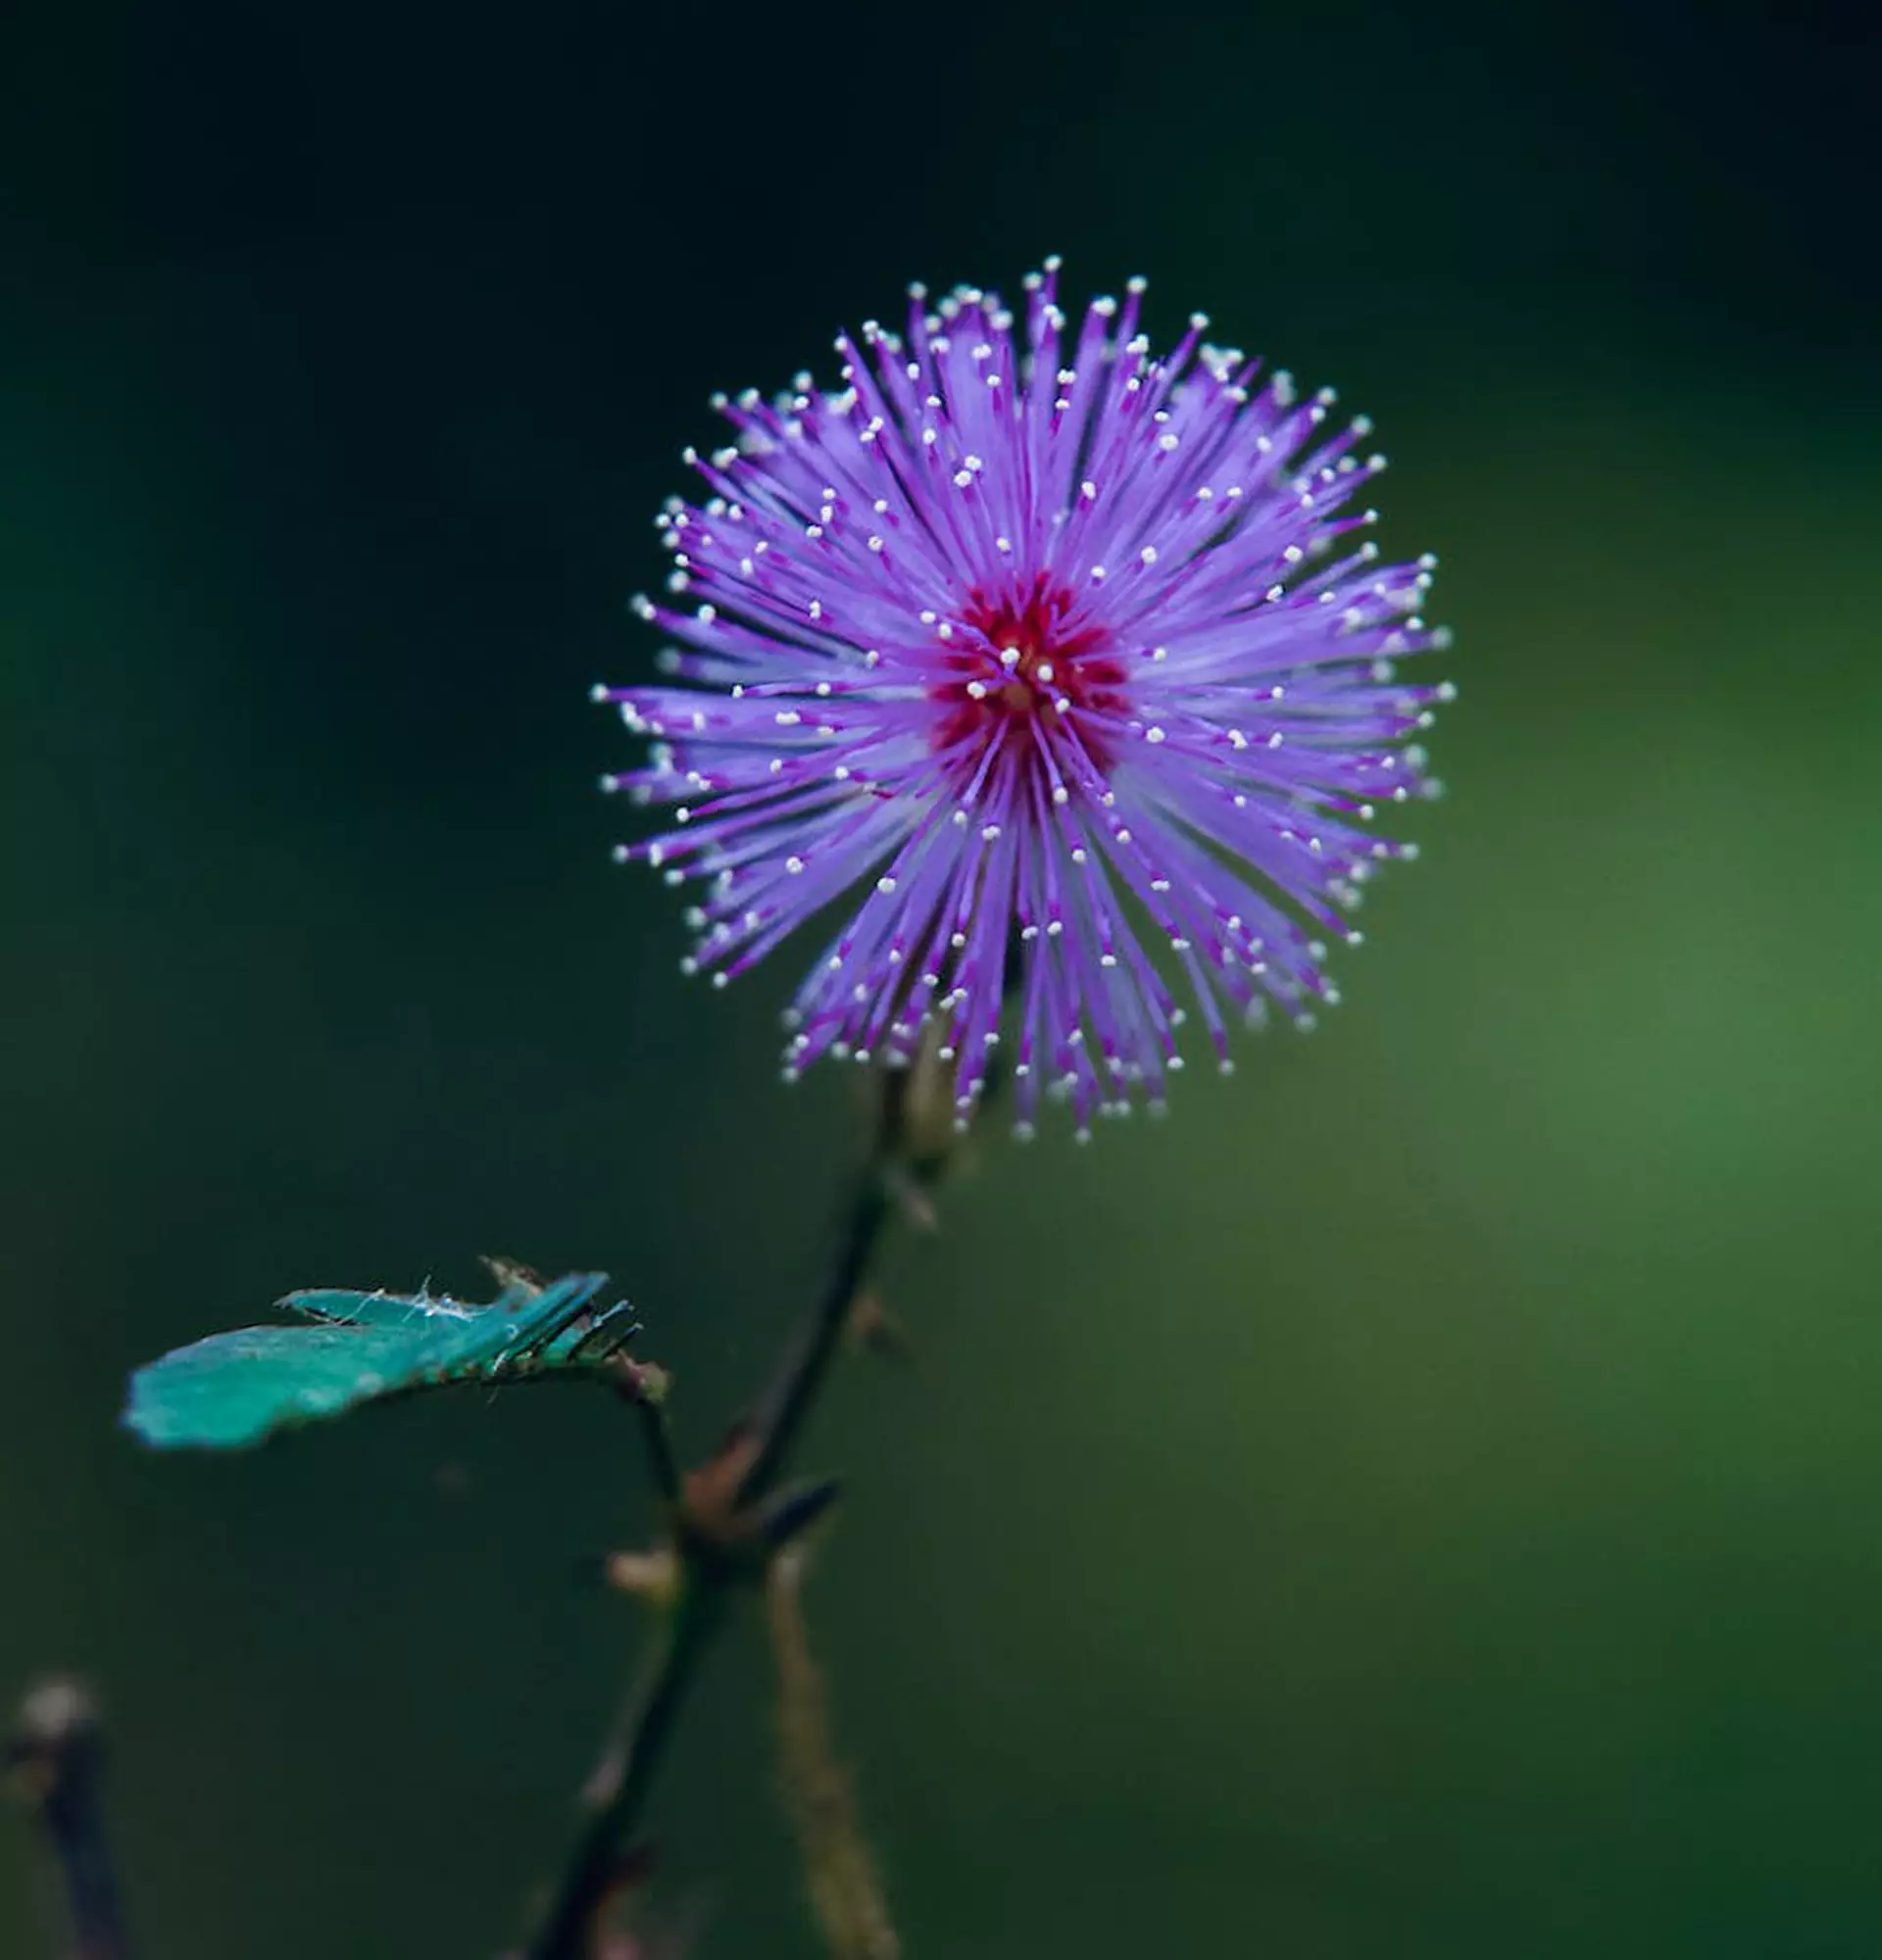 Mimosenfoto - Fass-mich-nicht-Blume an